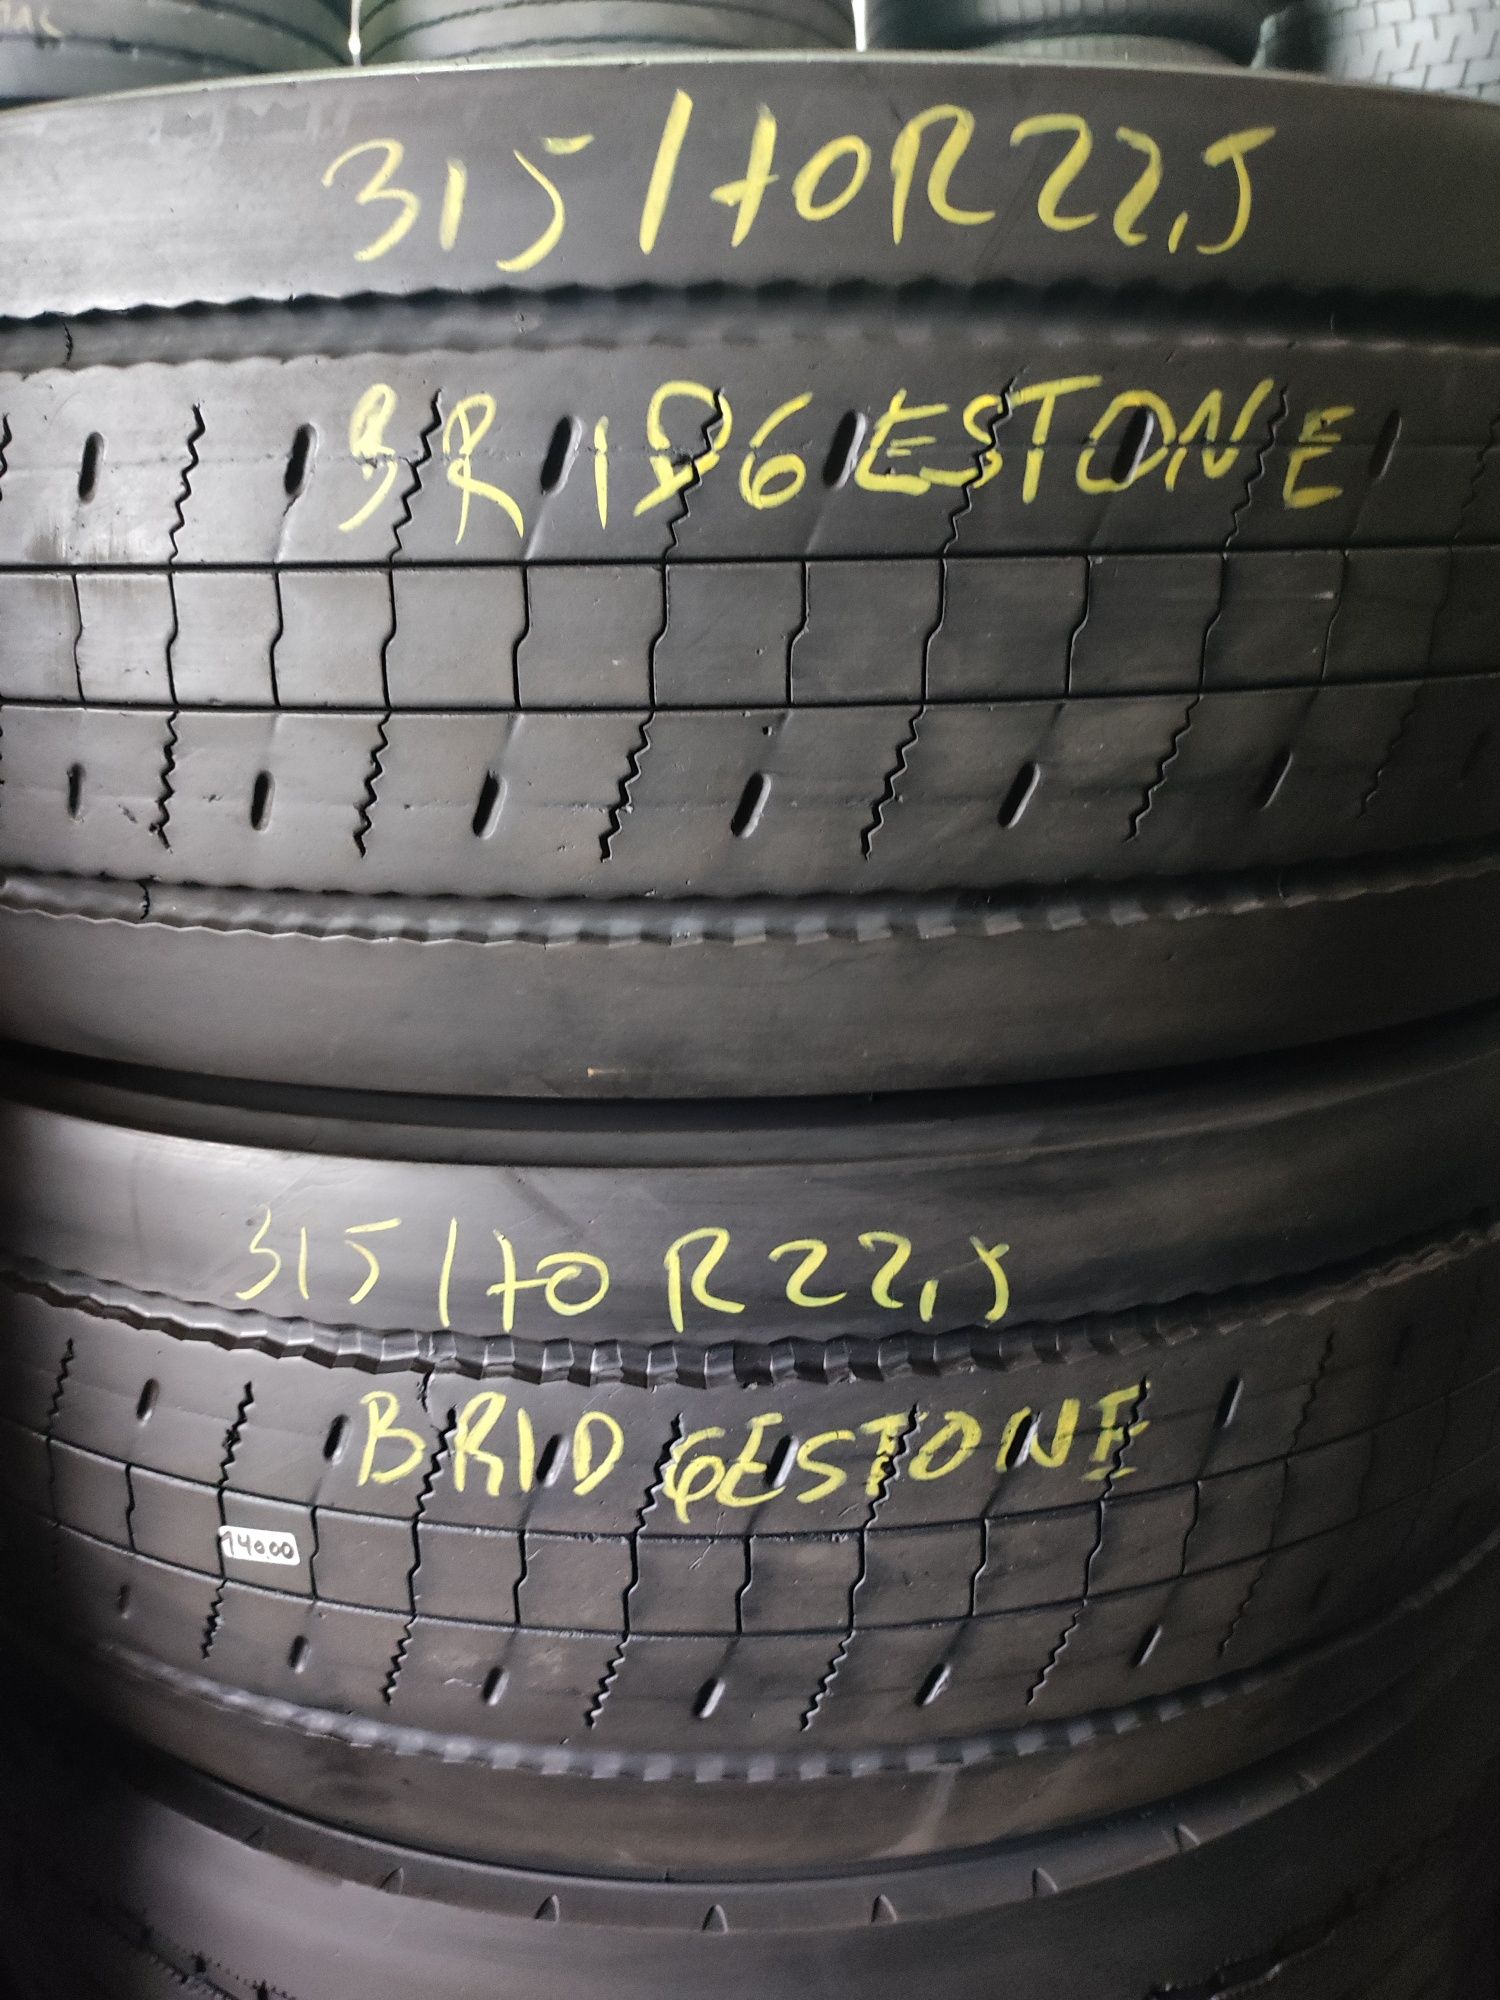 315/70R22,5 Bridgestone usados direcção